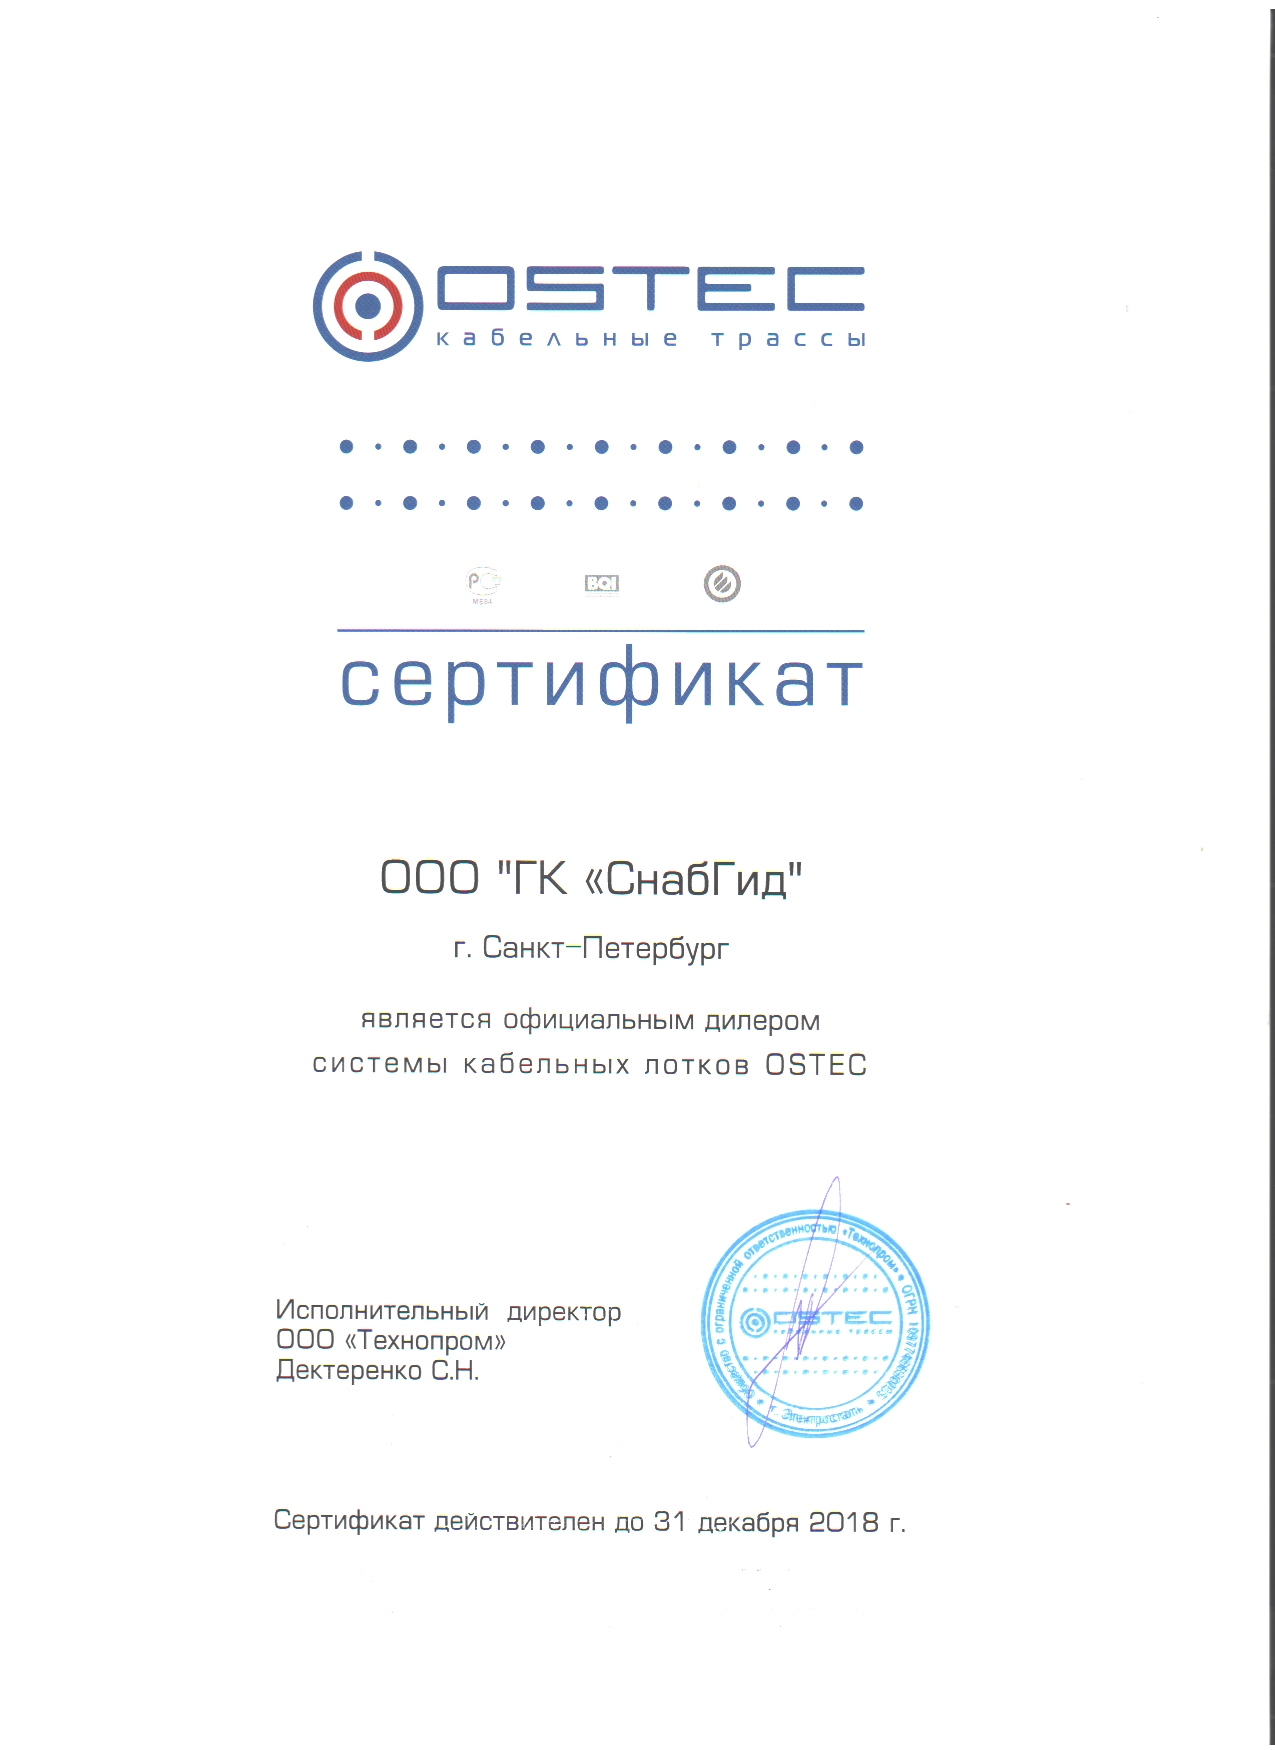 ГК СнабГид - Официальный дистрибьютор OSTEC